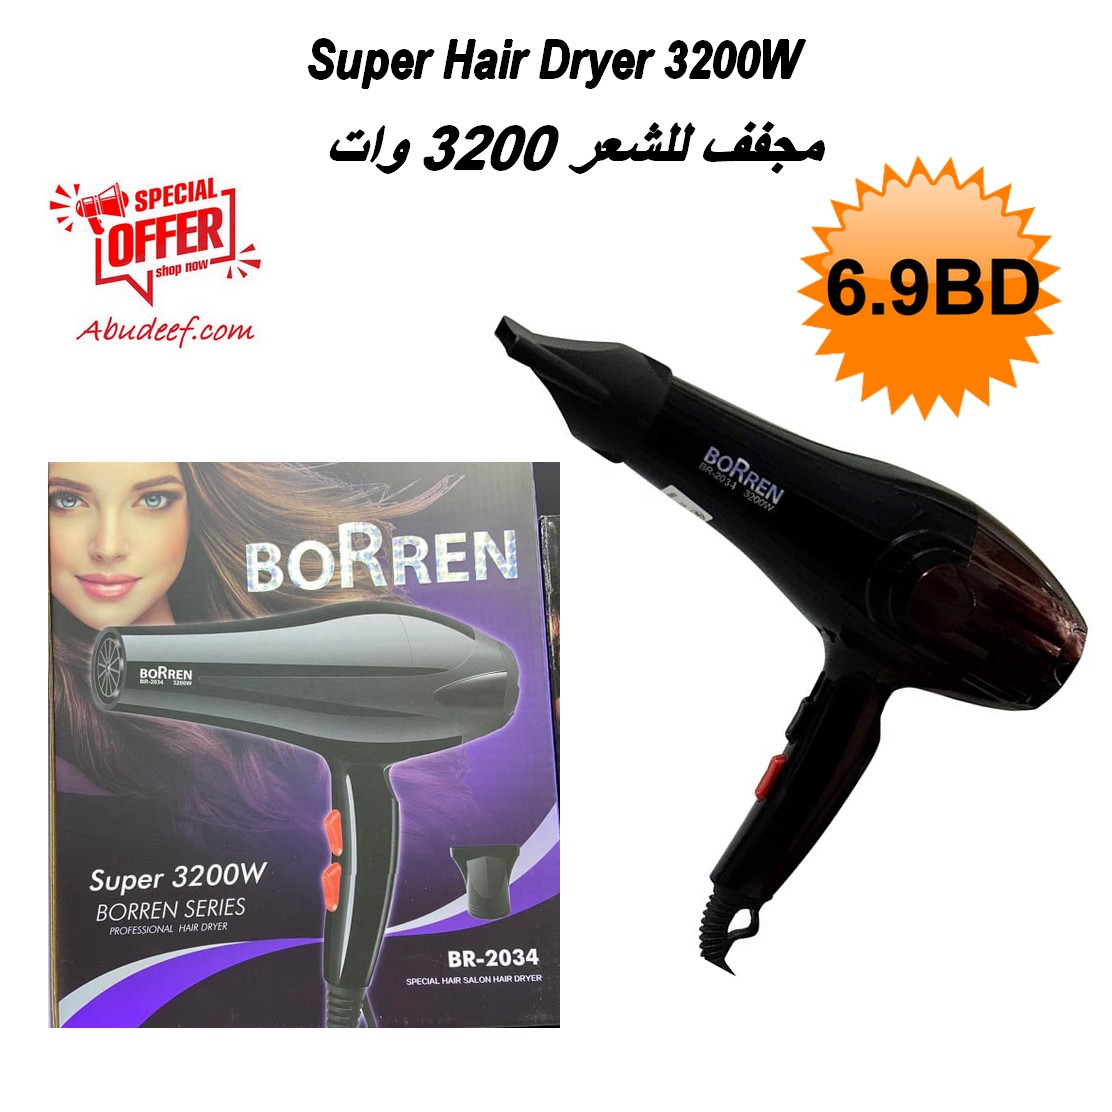 Super Hair Dryer 3200W